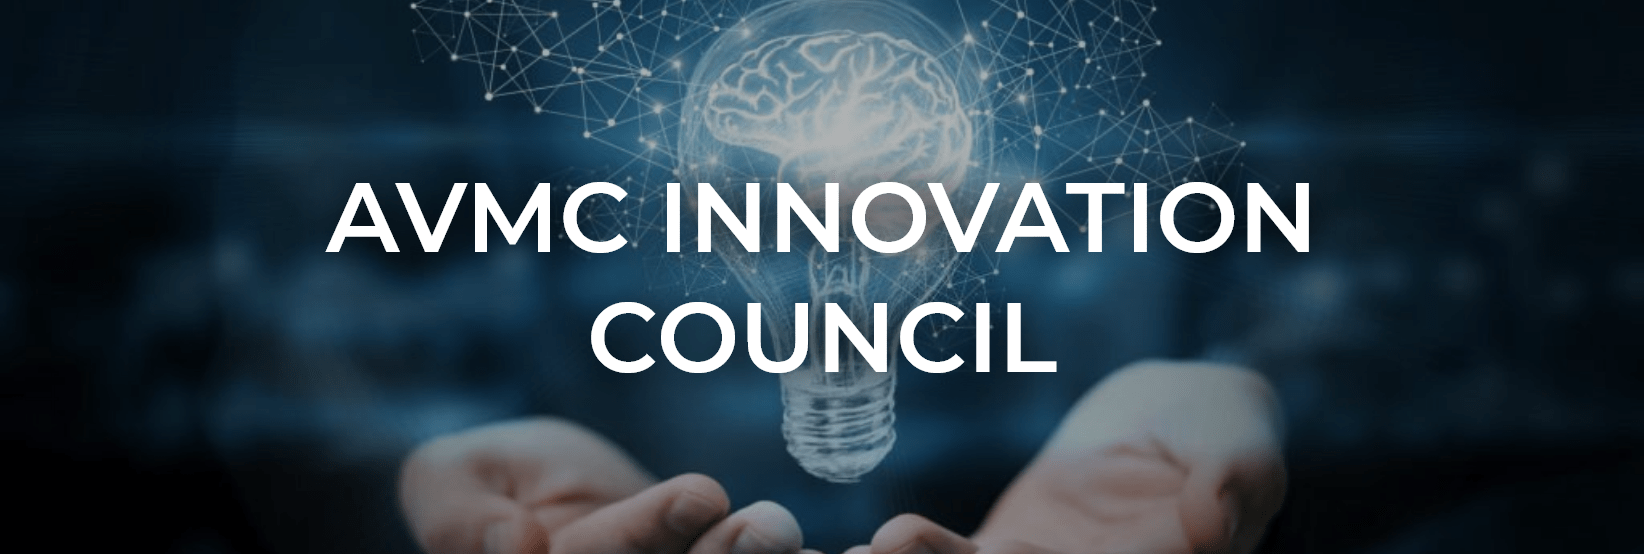 AVMC Innovation Council